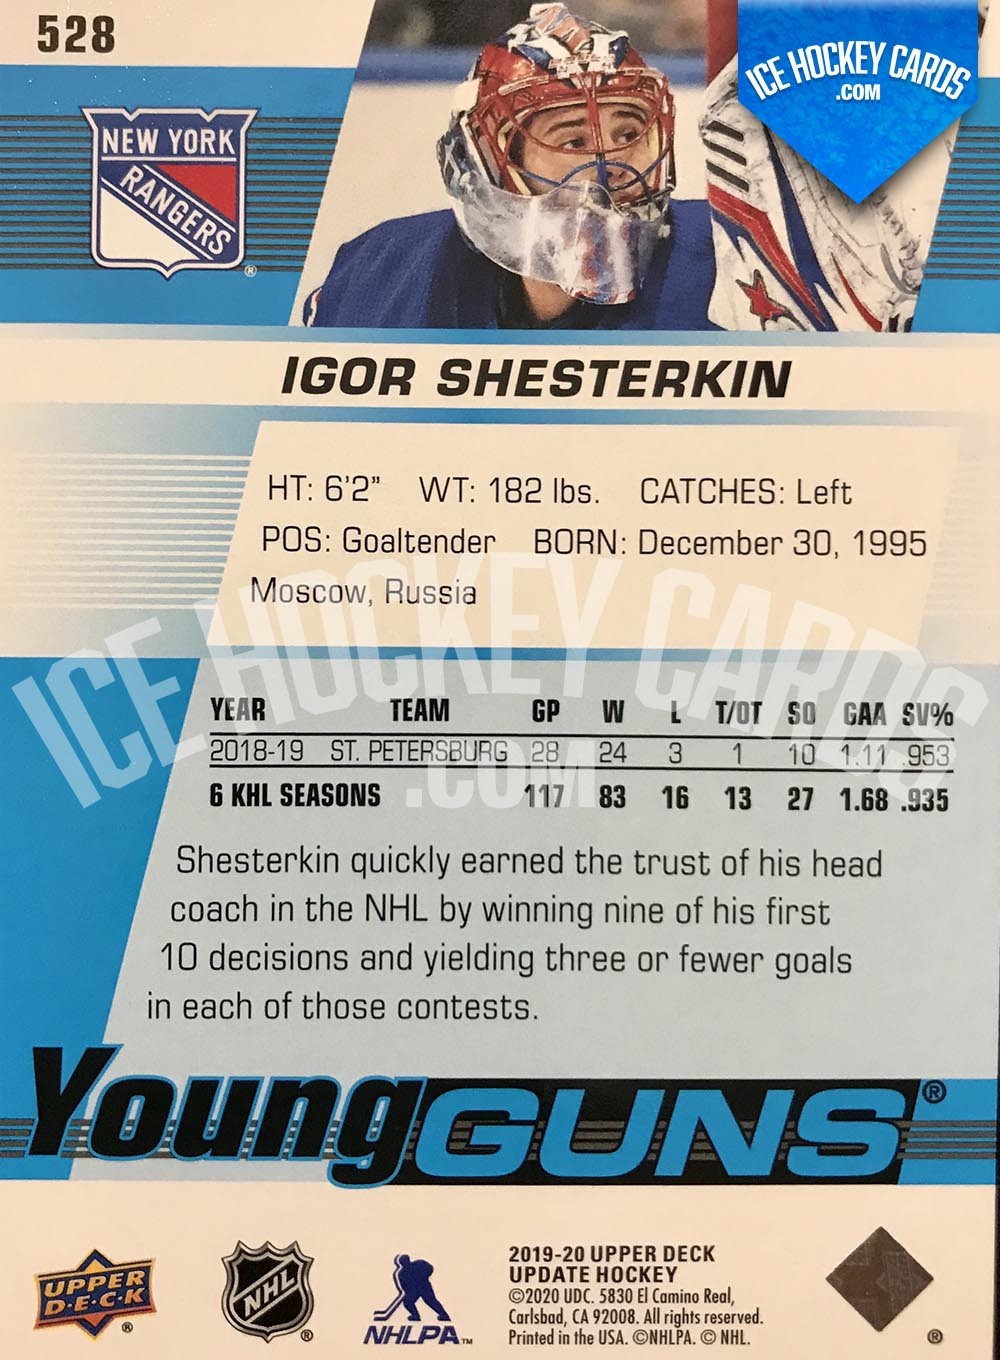 Upper Deck - Series 2019-20 - Igor Shesterkin Young Guns Rookie Card back